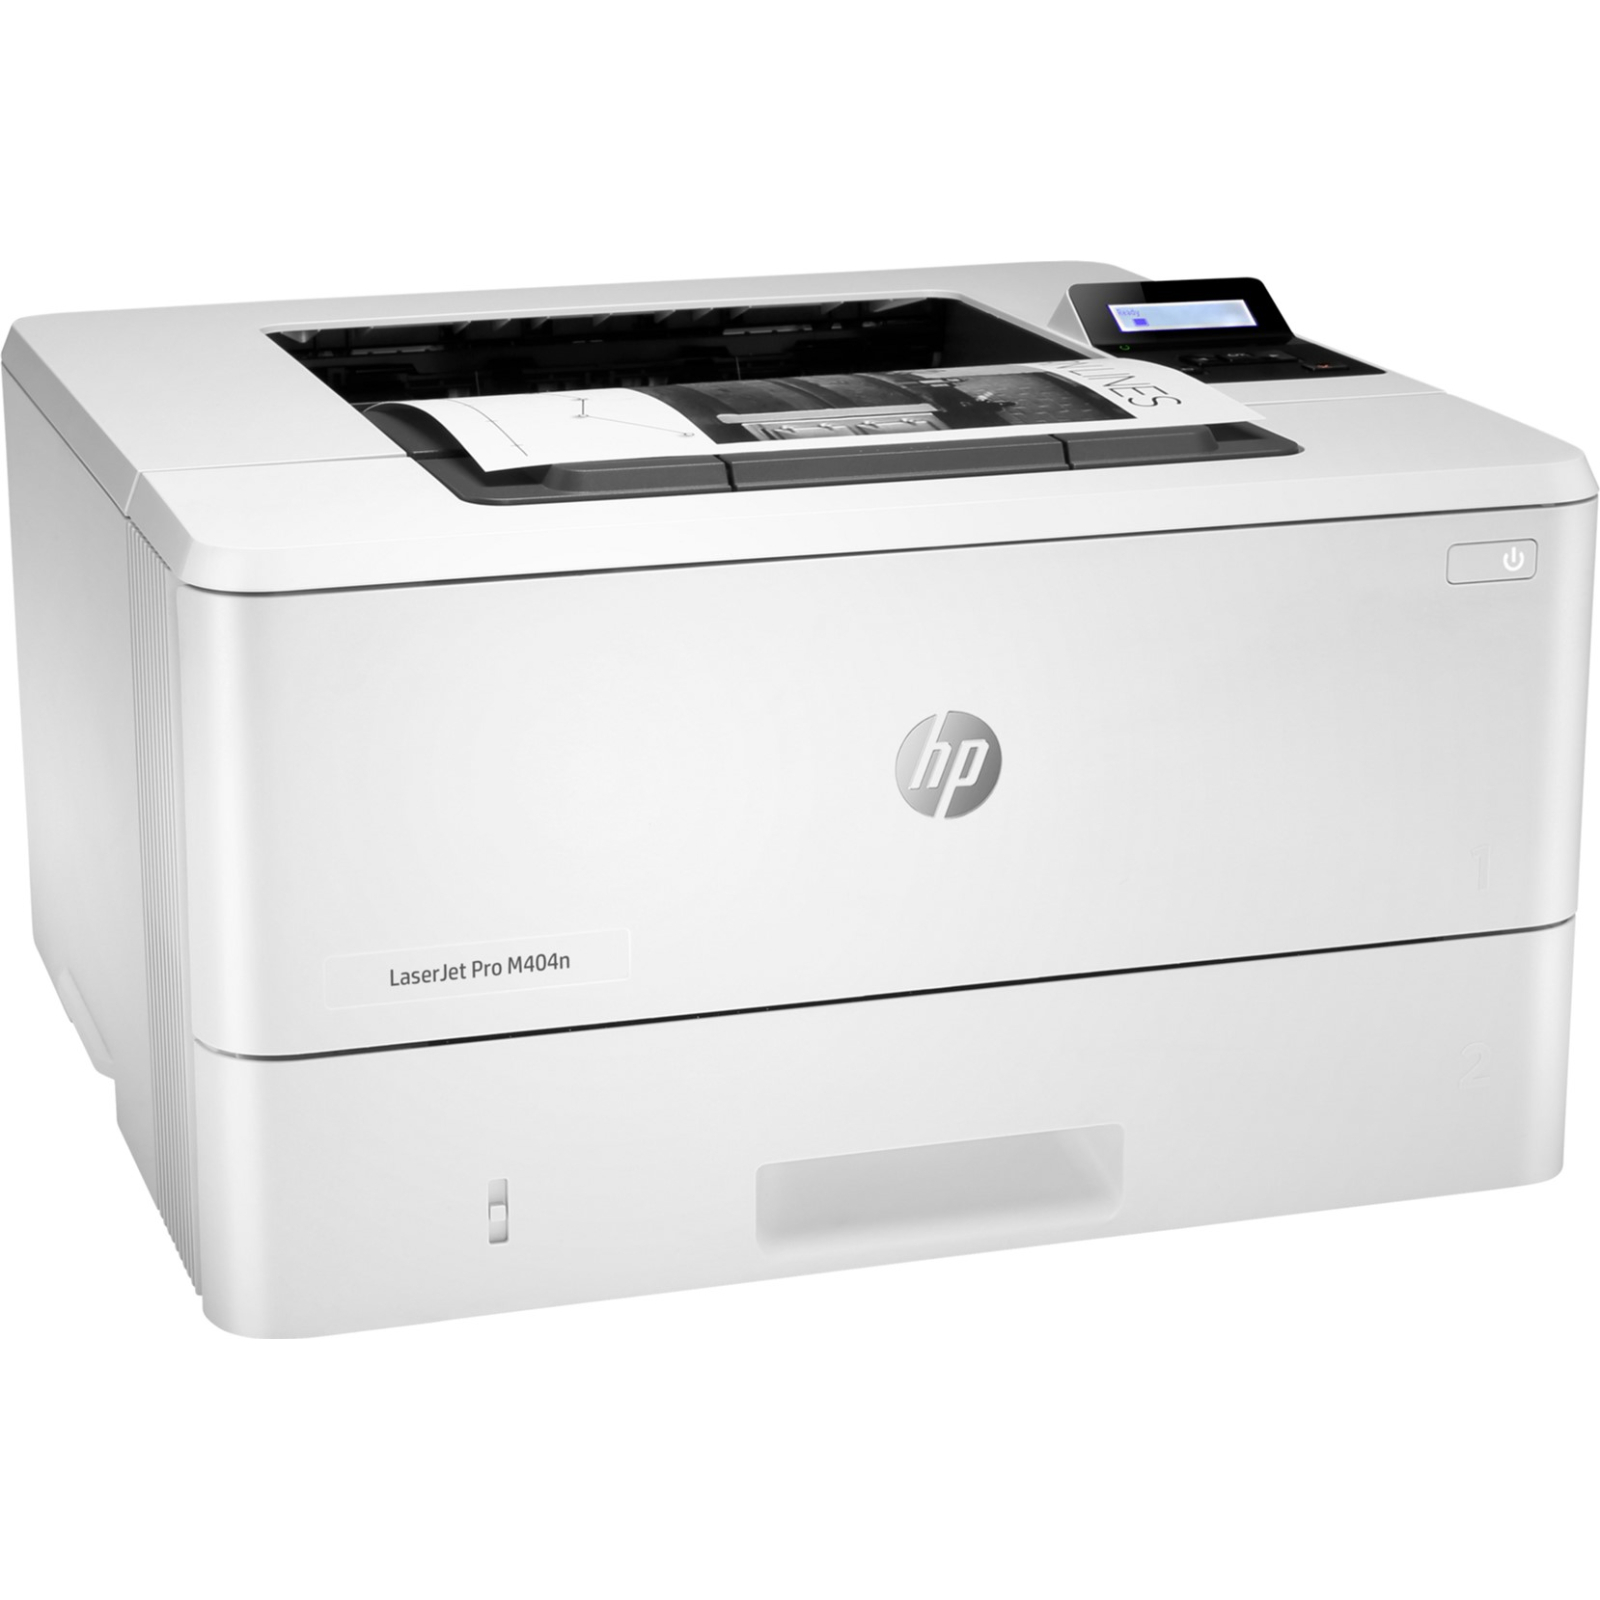 Лазерный принтер HP LaserJet Pro M404n (W1A52A) изображение 2